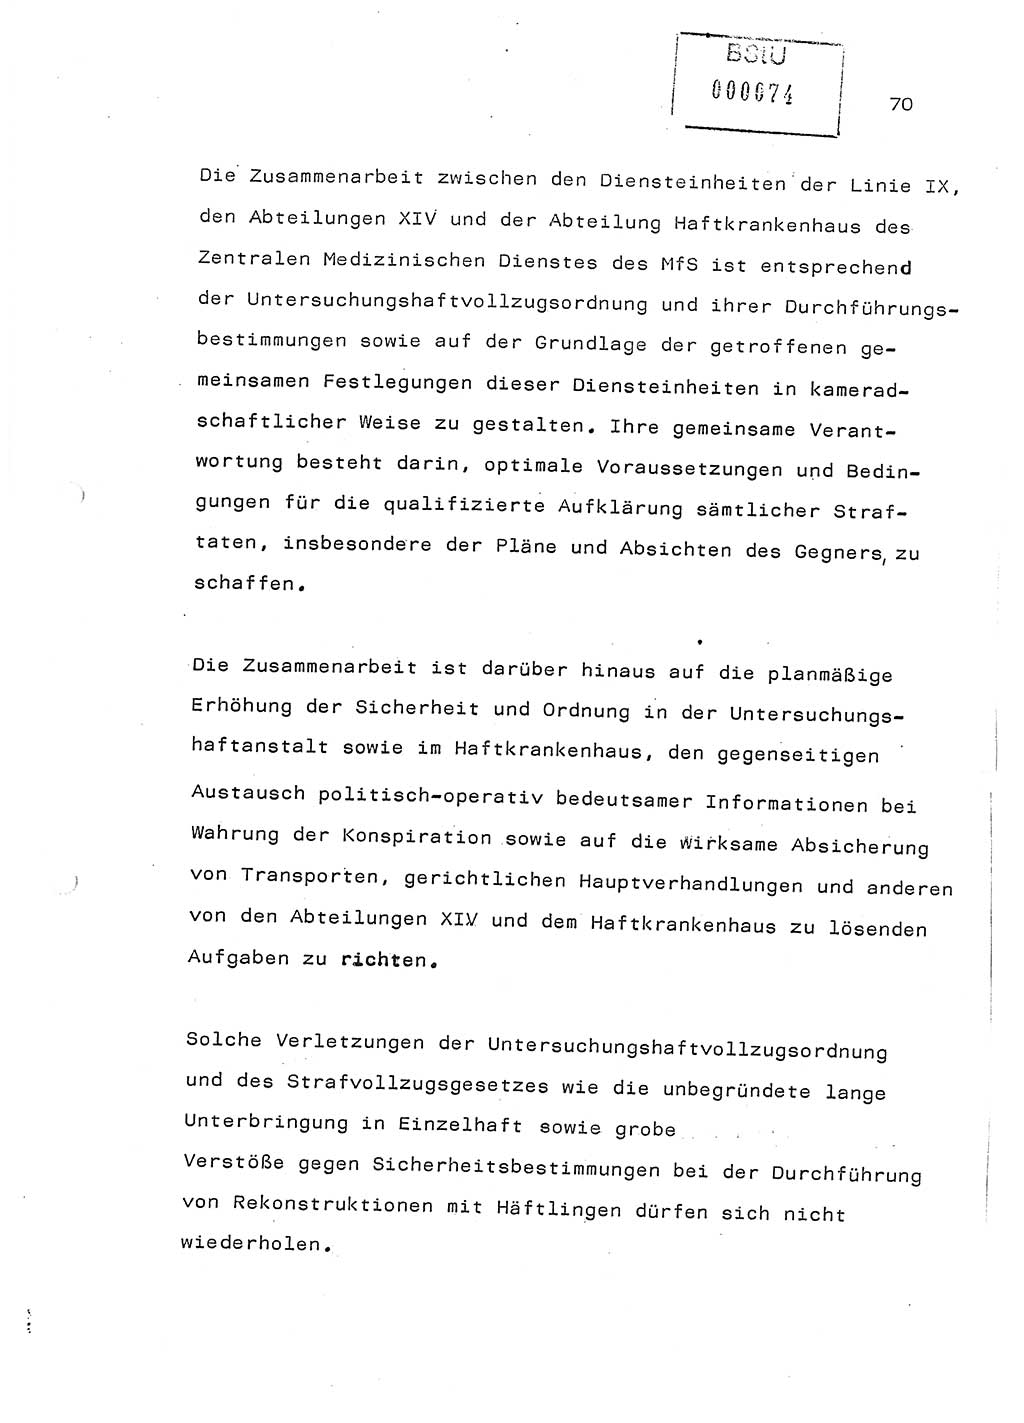 Referat (Generaloberst Erich Mielke) auf der Zentralen Dienstkonferenz am 24.5.1979 [Ministerium für Staatssicherheit (MfS), Deutsche Demokratische Republik (DDR), Der Minister], Berlin 1979, Seite 70 (Ref. DK DDR MfS Min. /79 1979, S. 70)